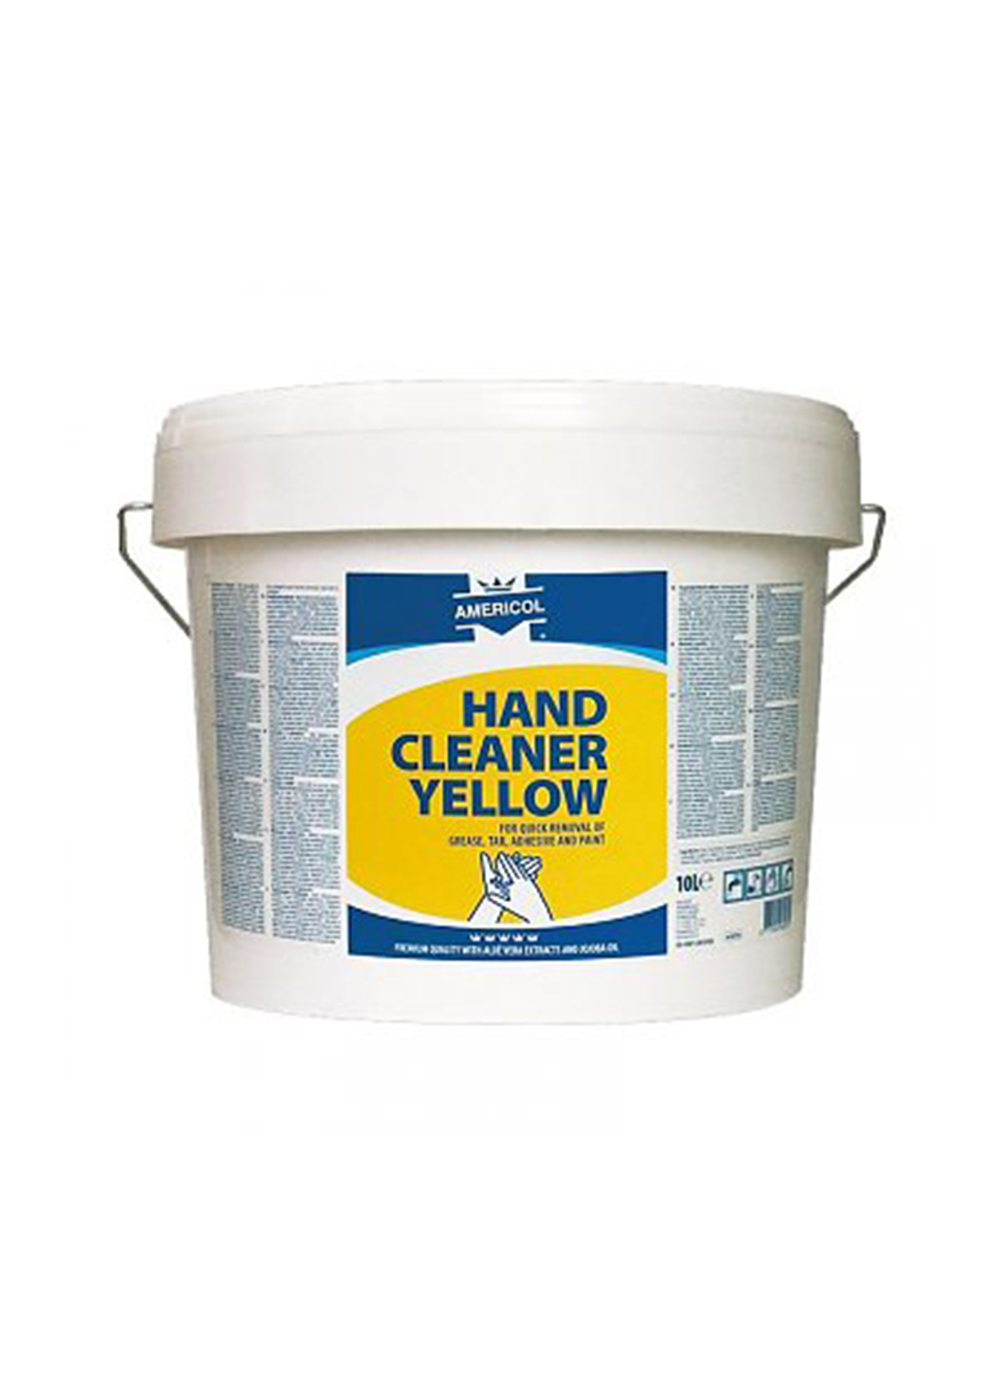 AMERICOL hand cleaner Yellow